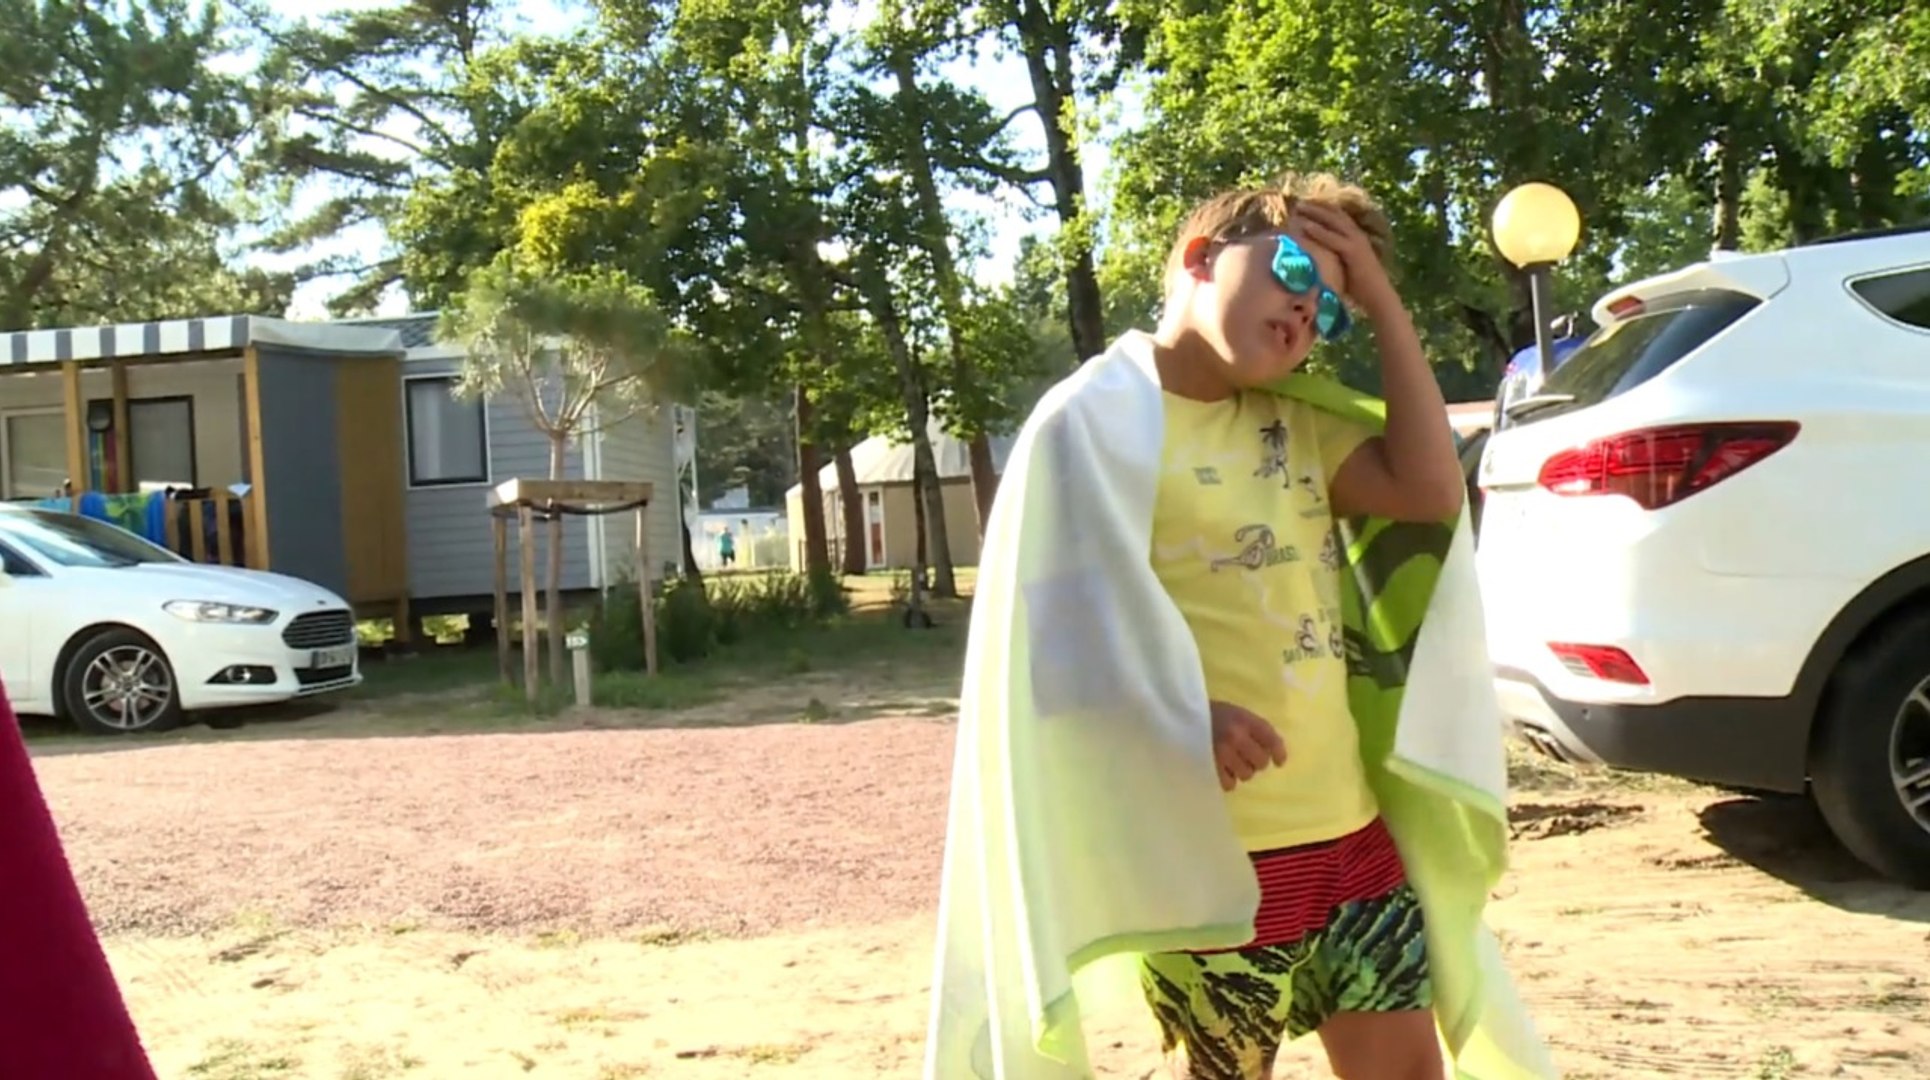 Exclu. Vive le camping (6Ter) : à peine ado, Nathan décide de se présenter  à l'élection de Mister Camping ! - Vidéo Dailymotion